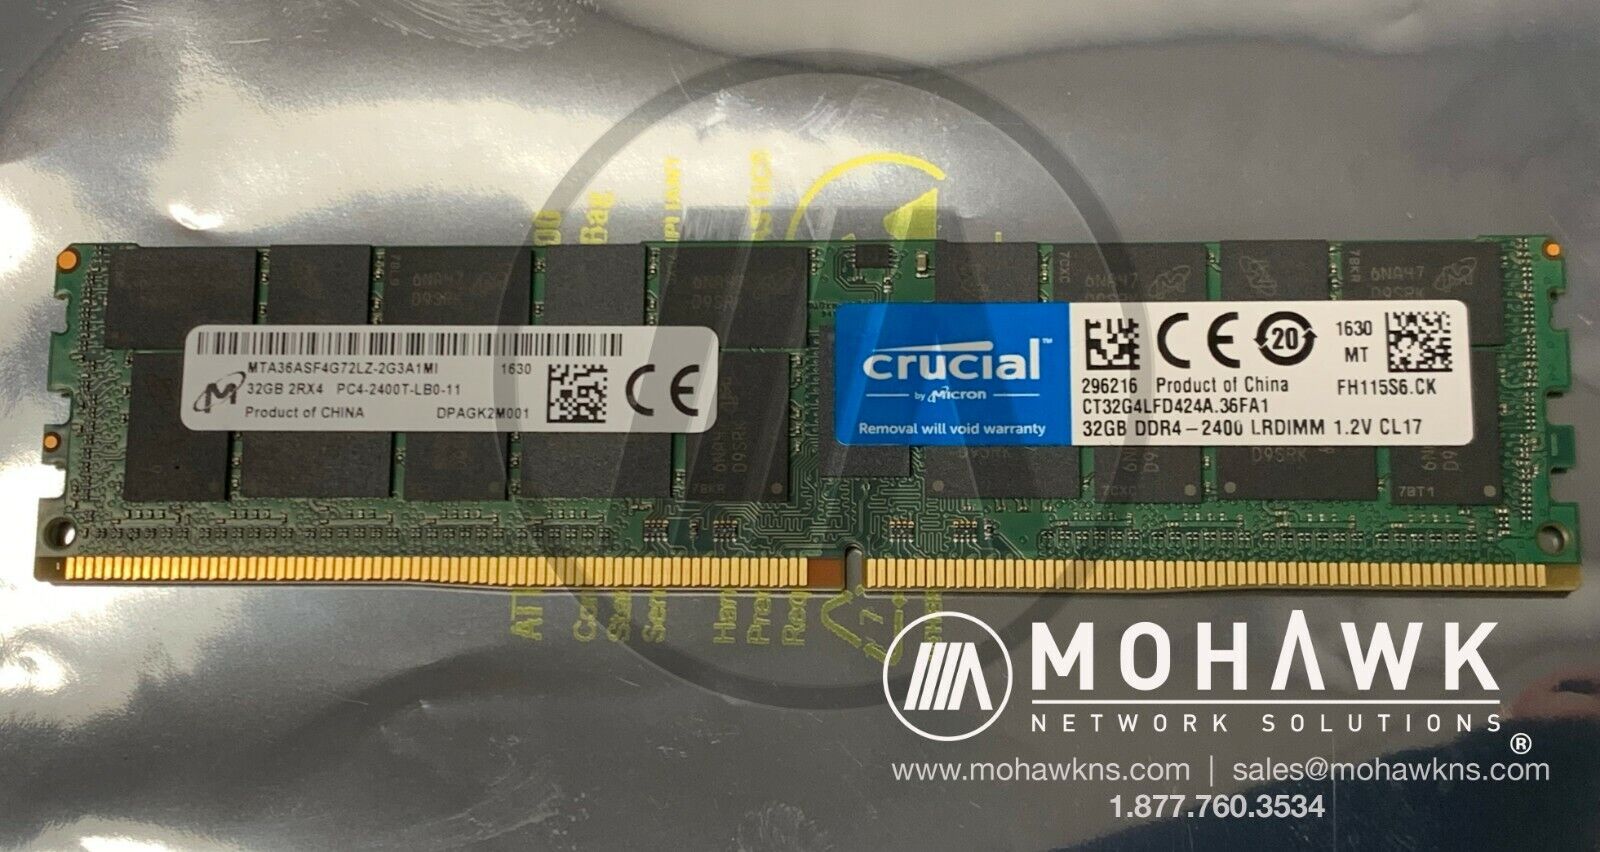 Crucial by Micron 32GB DDR4-2400 ECC LRDIMM MTA36ASF4G72LZ-2G3A1